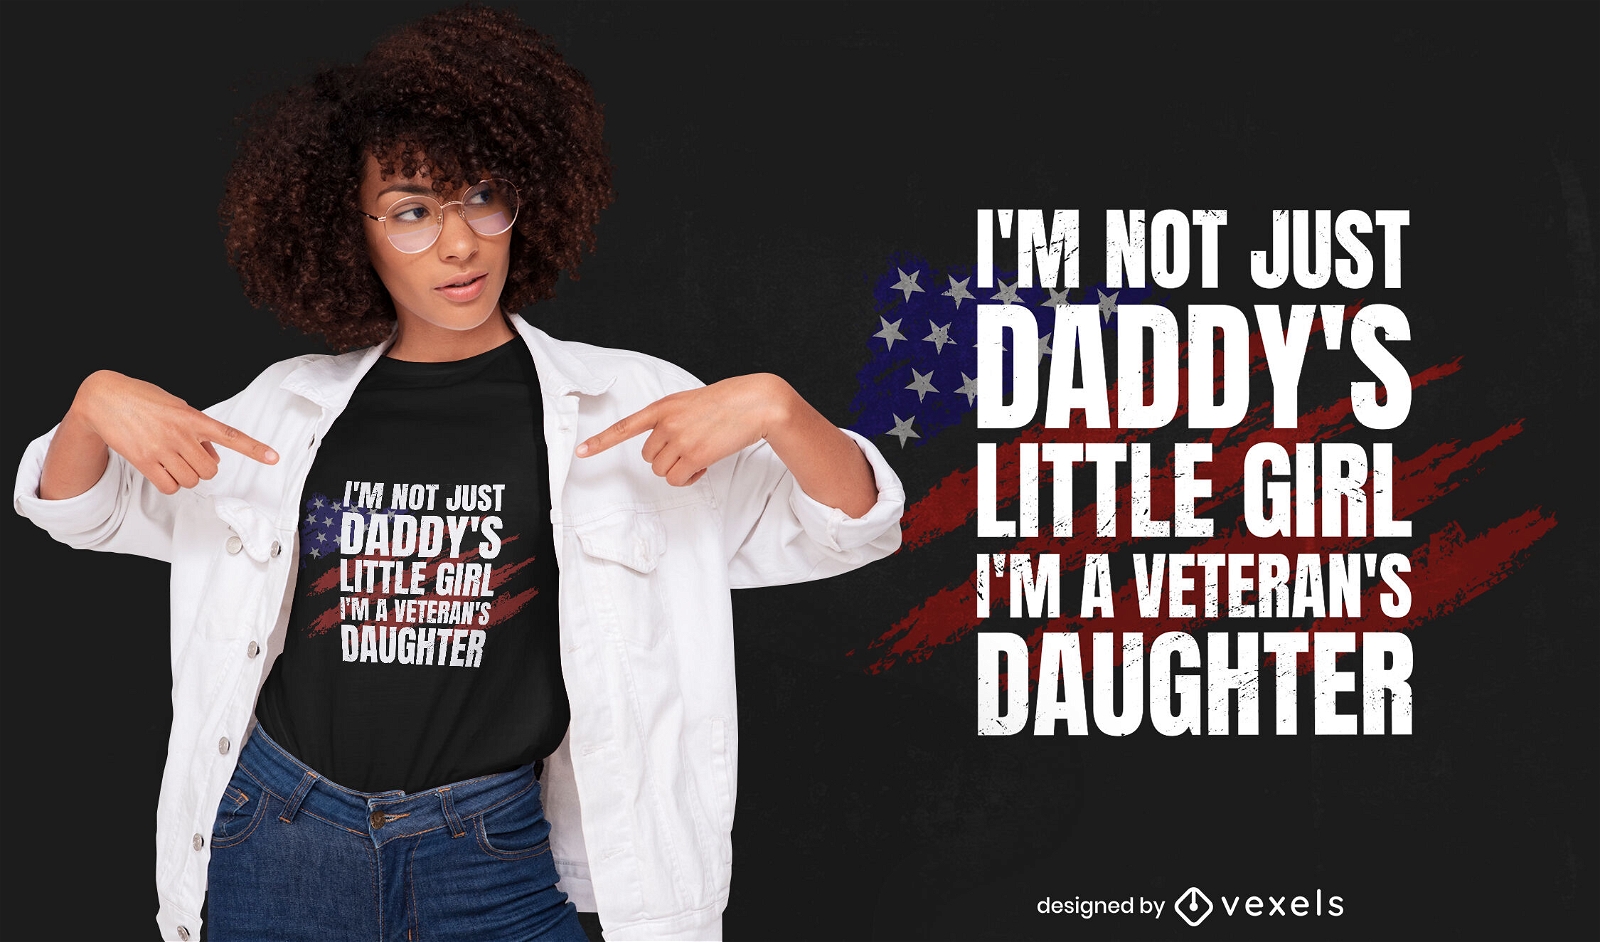 Veteran's daughter t-shirt design